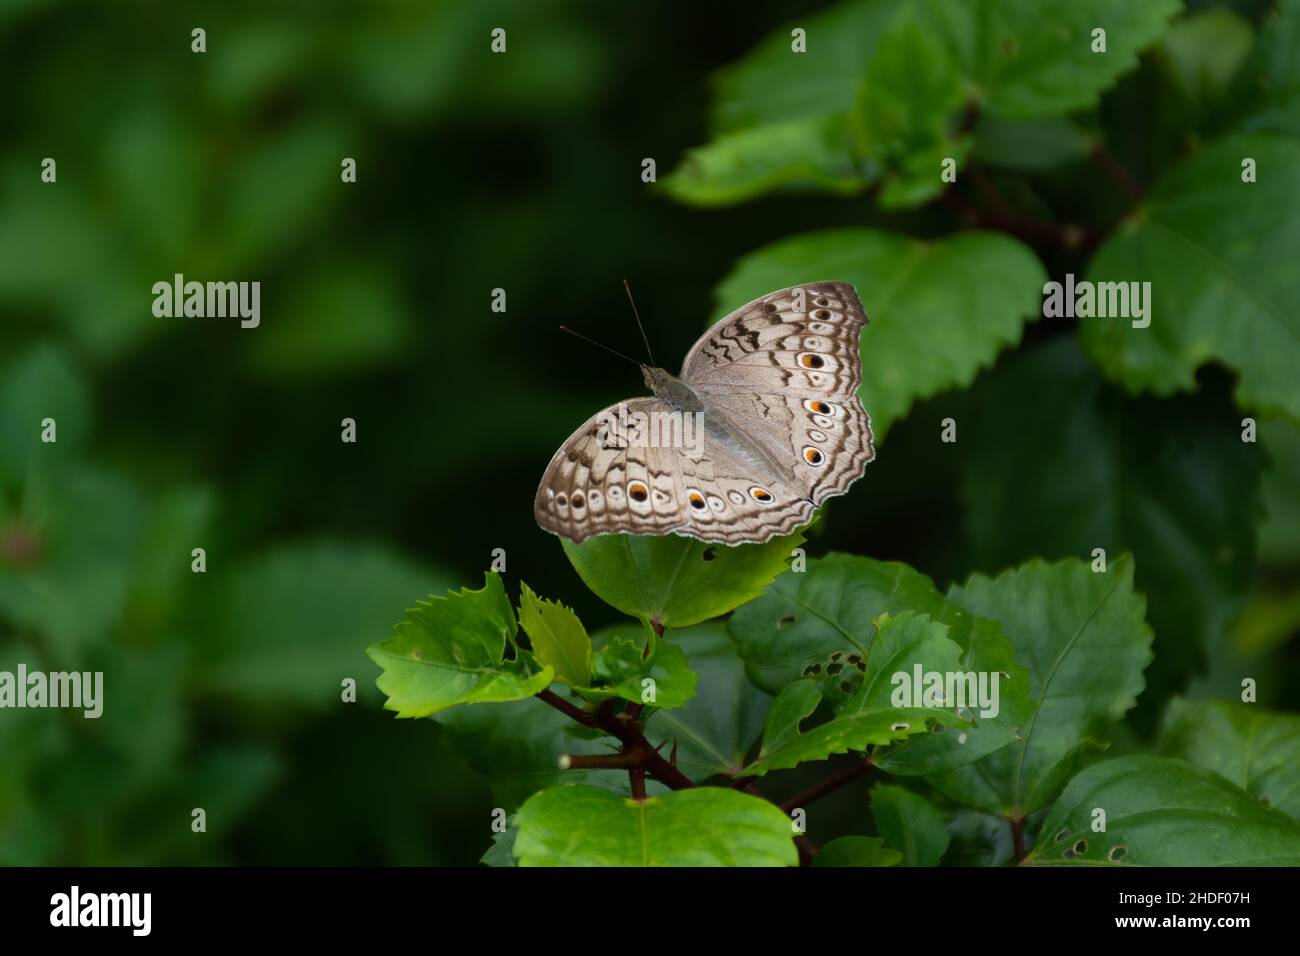 Ein Grauer Stiefmütterchen (Junonia atlies) Schmetterling, der auf einem Blatt ruht und seine Flügel offen ausbreitet, im Garten in Mangalore, Karnataka, Indien. Stockfoto